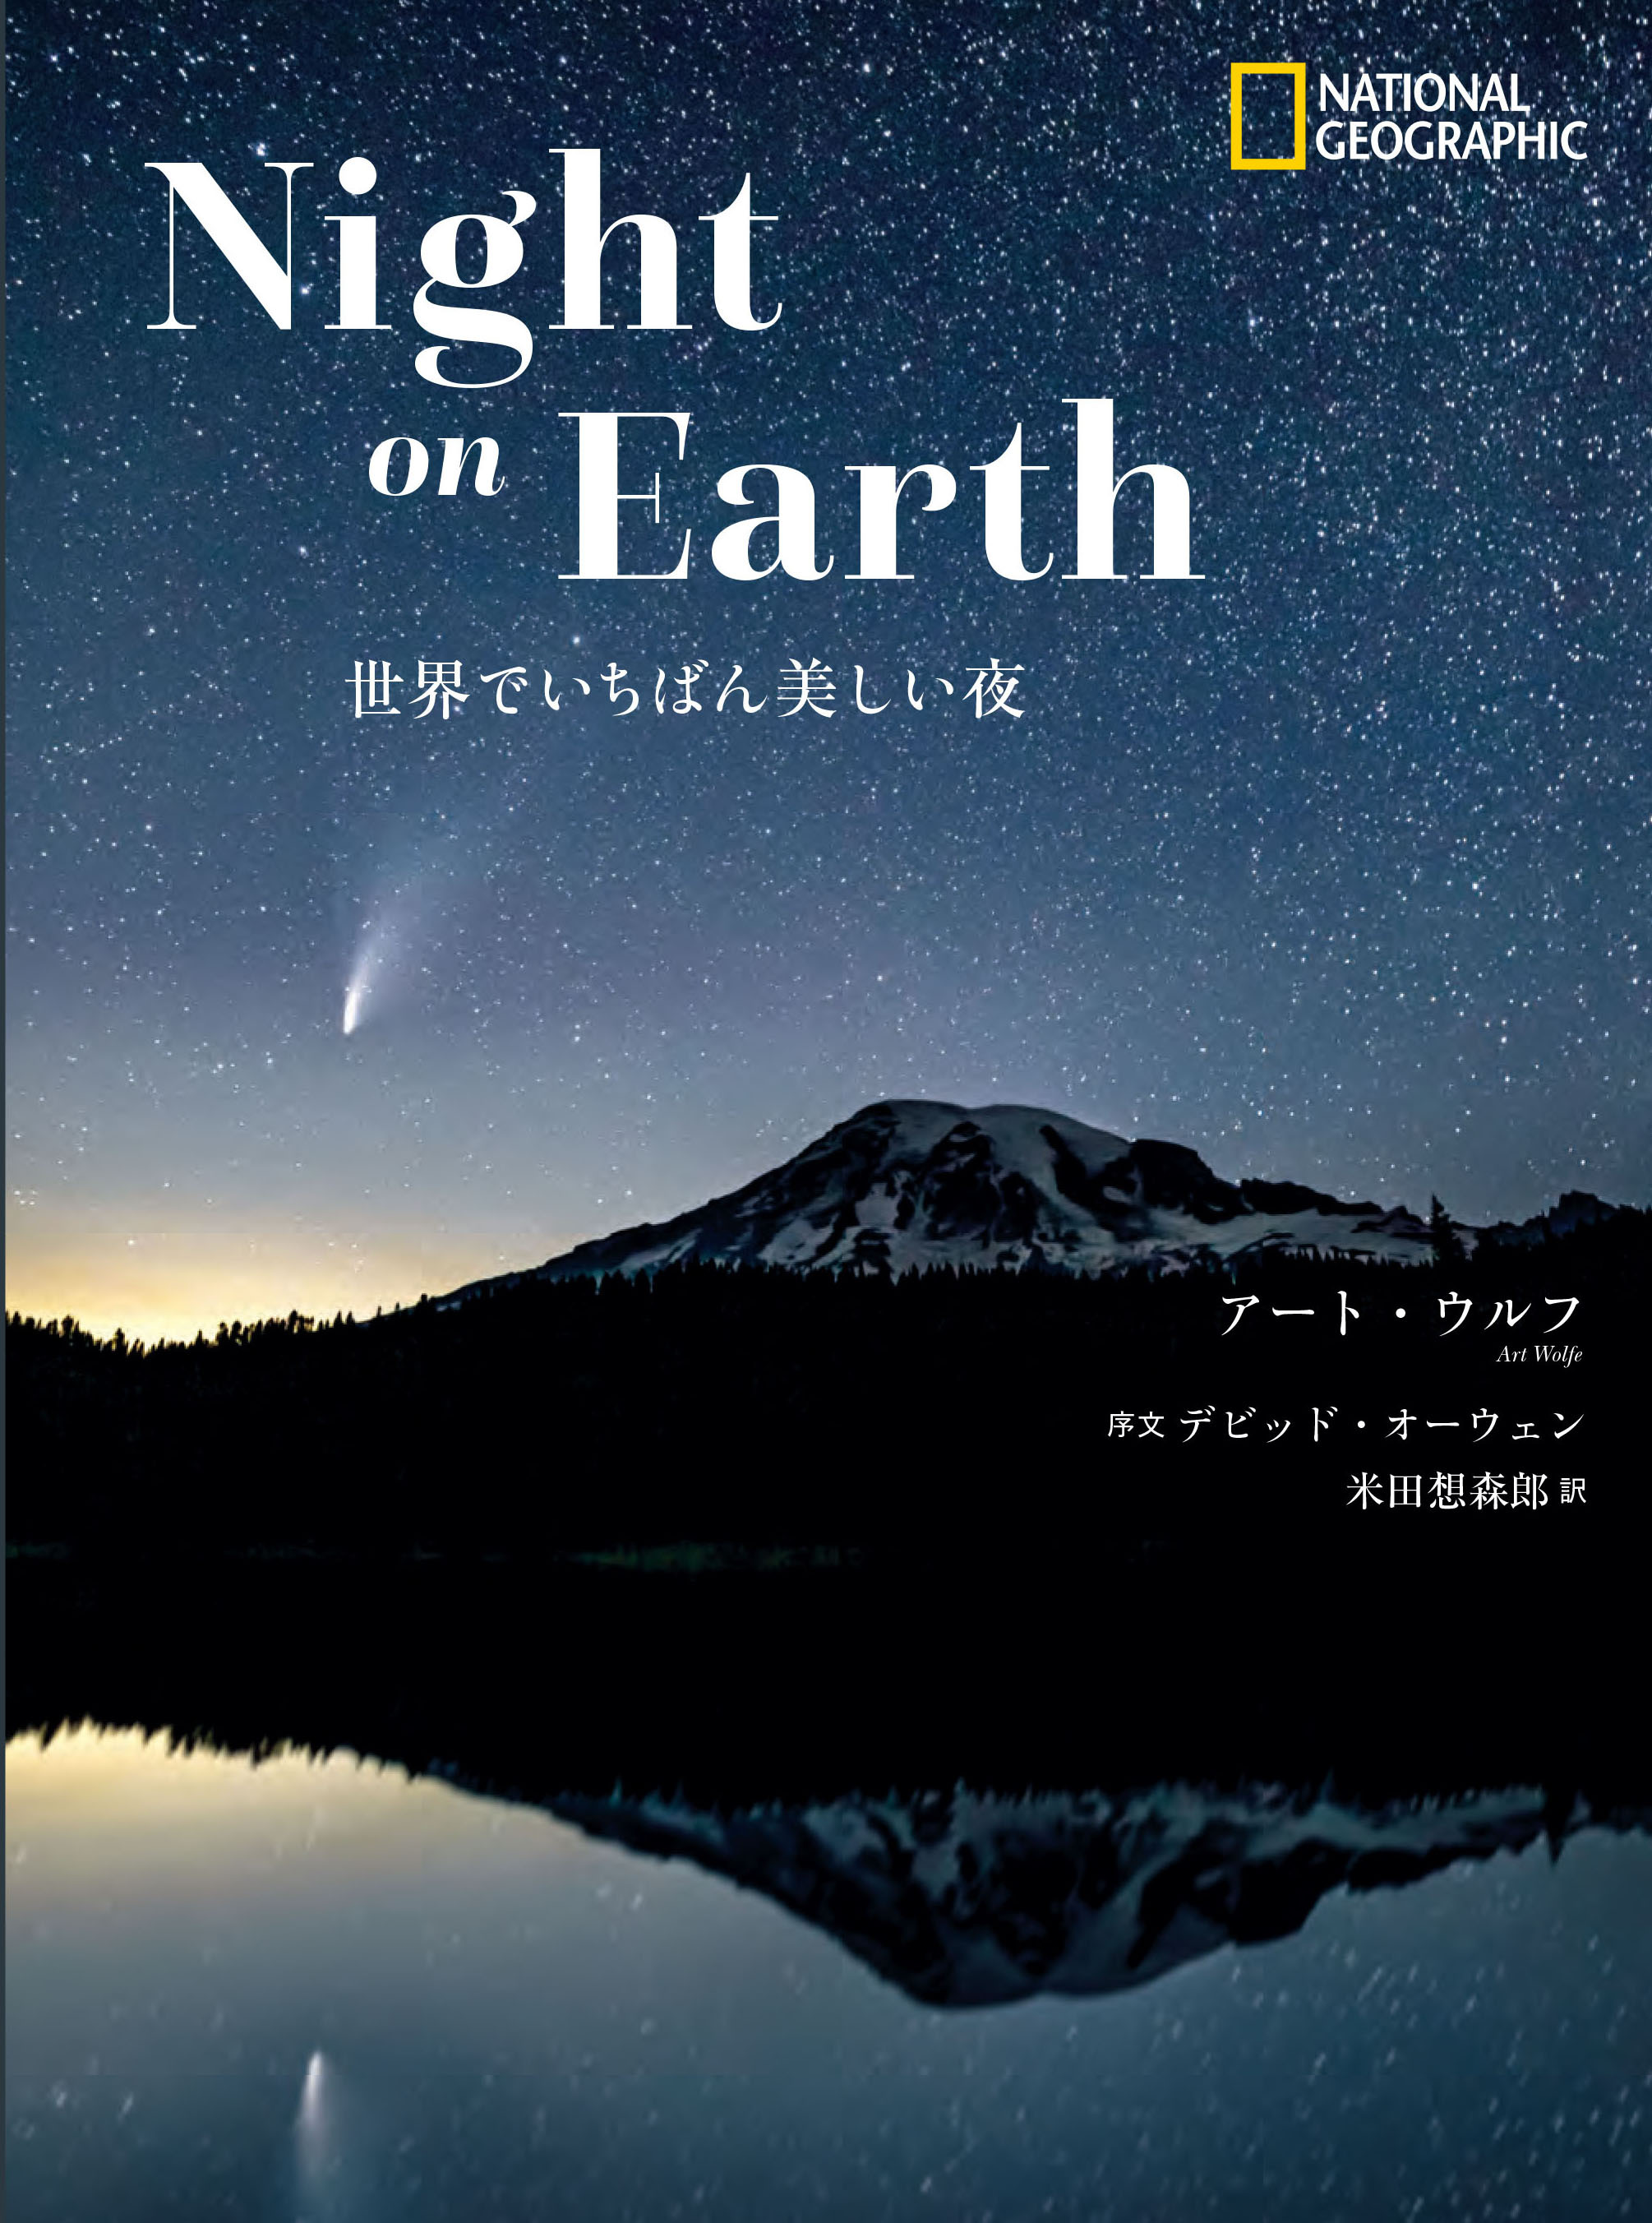 写真集 Night On Earth 世界でいちばん美しい夜 発売中 日経ナショナル ジオグラフィック社のプレスリリース